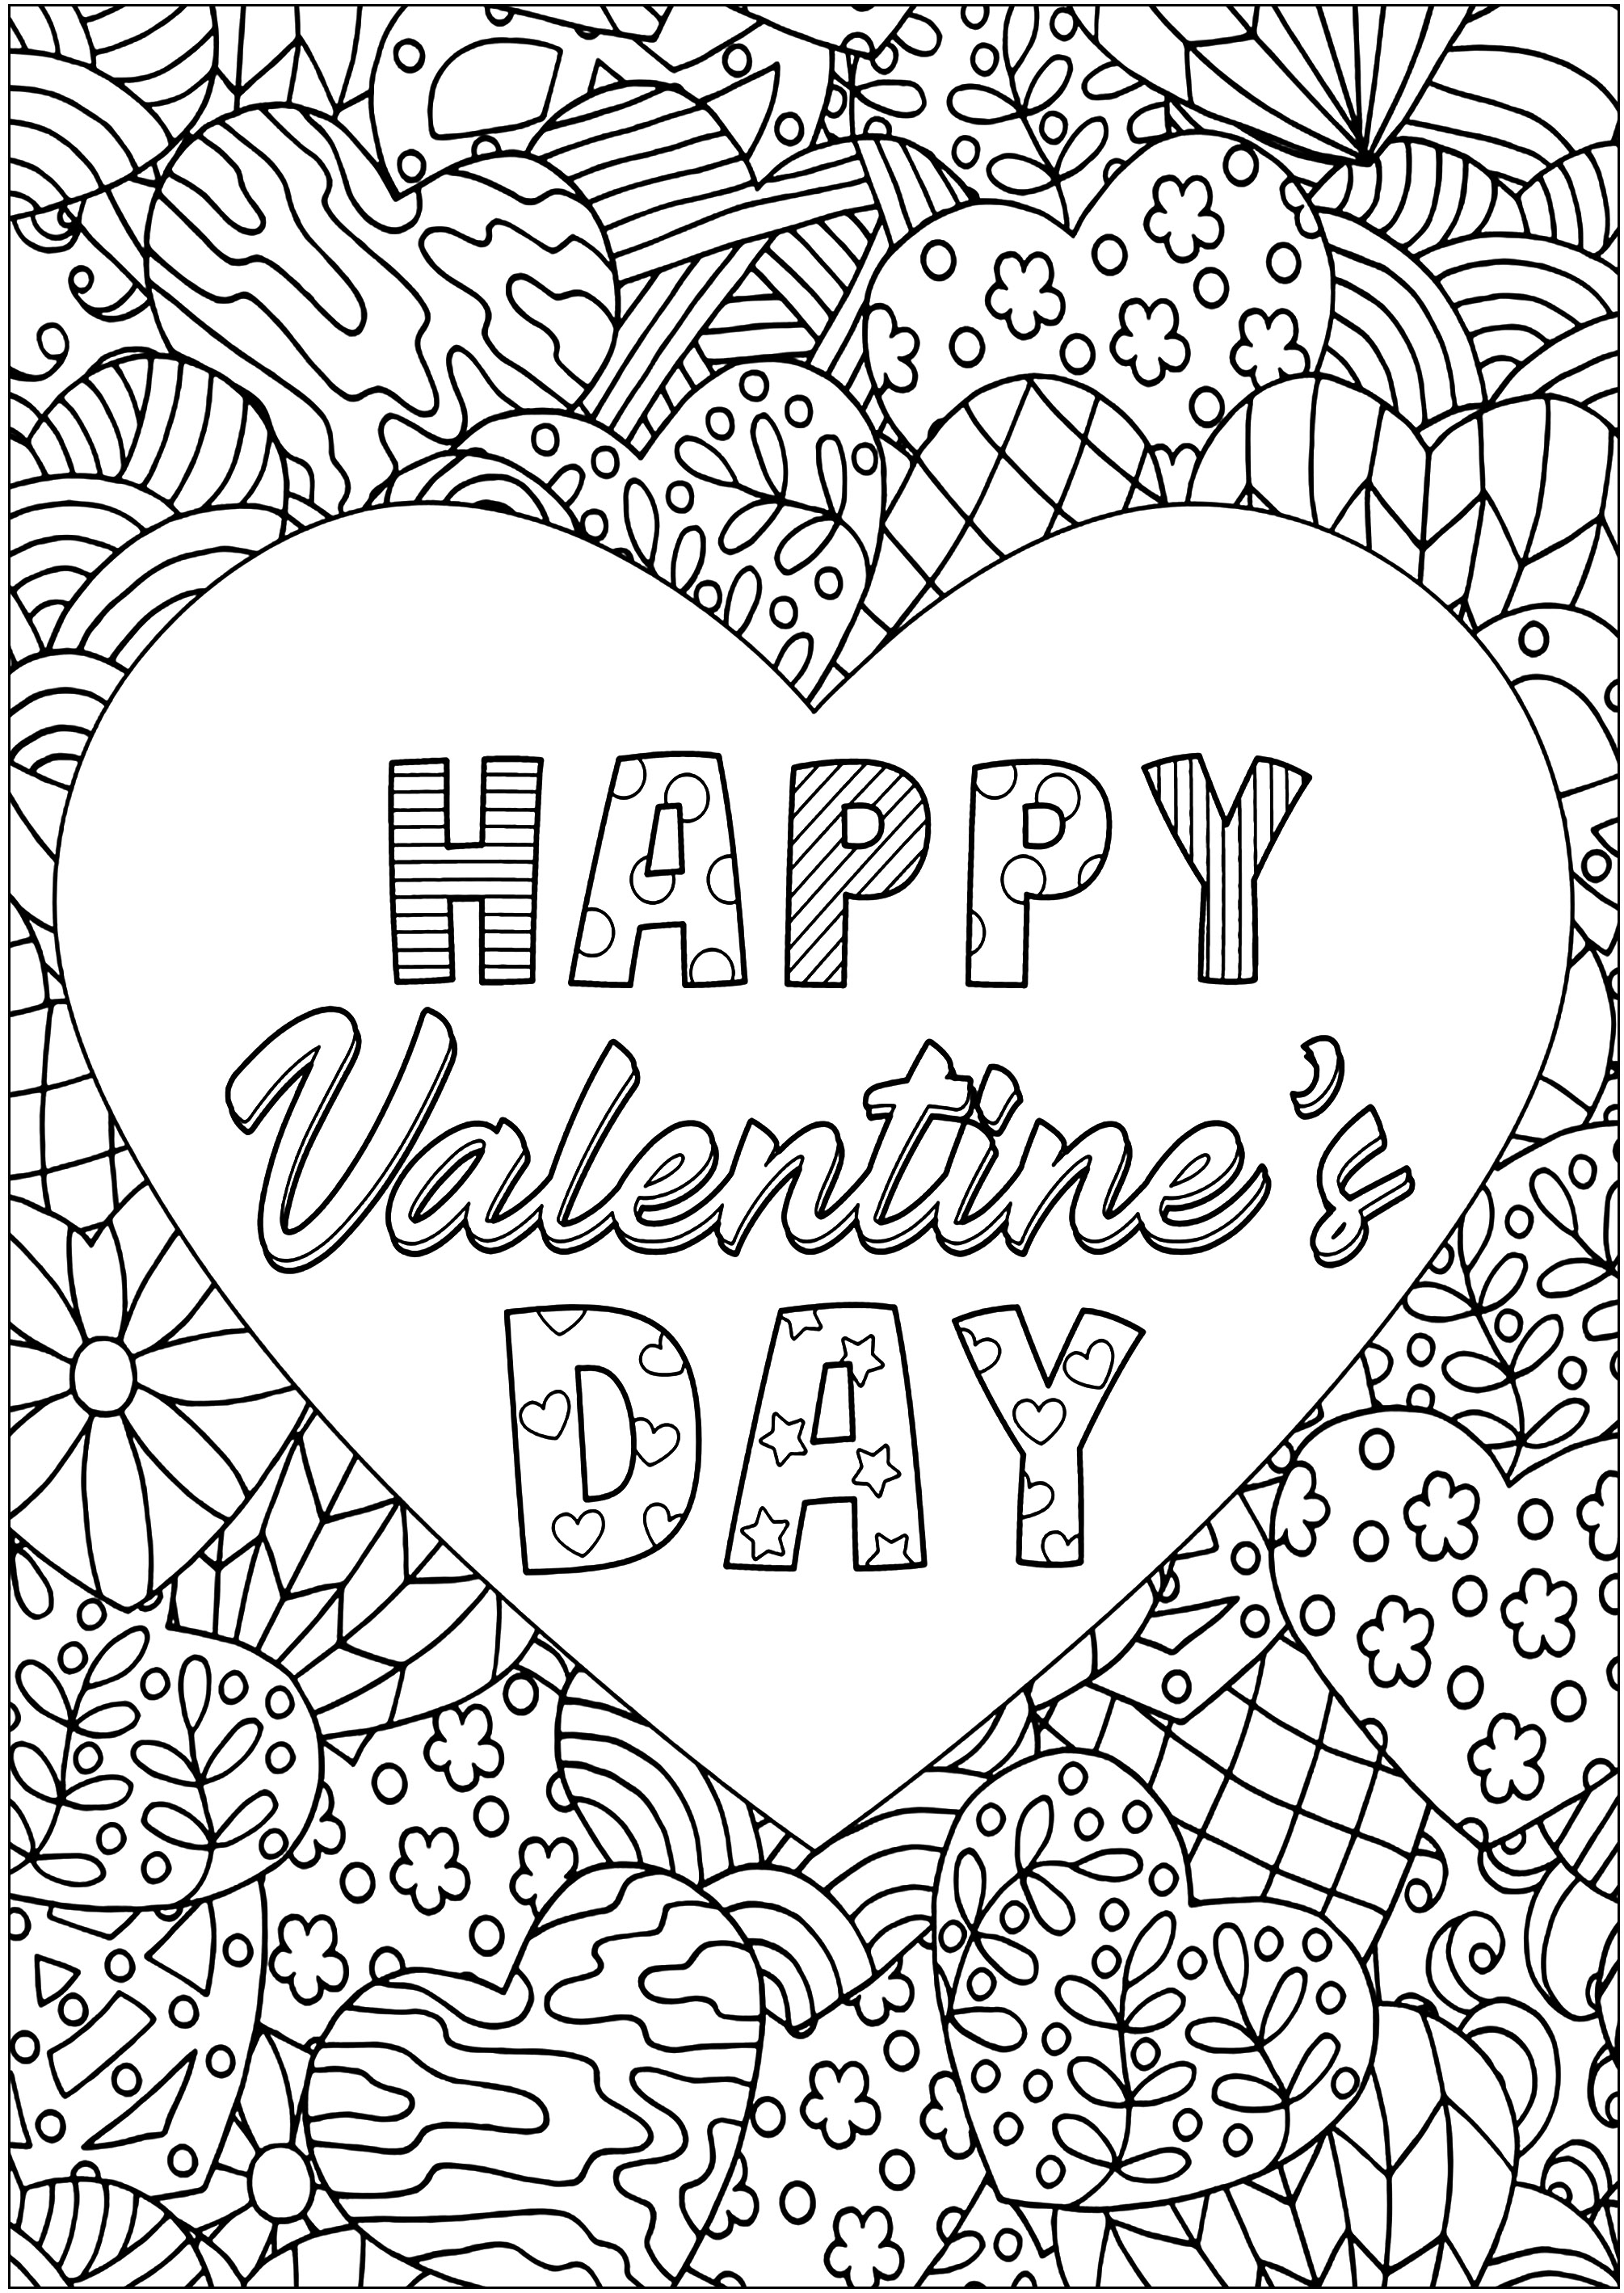 Cuore di San Valentino con disegni intricati. Cuori a fantasia circondano un grande cuore con il testo 'HAPPY VALENTINE'S DAY'.